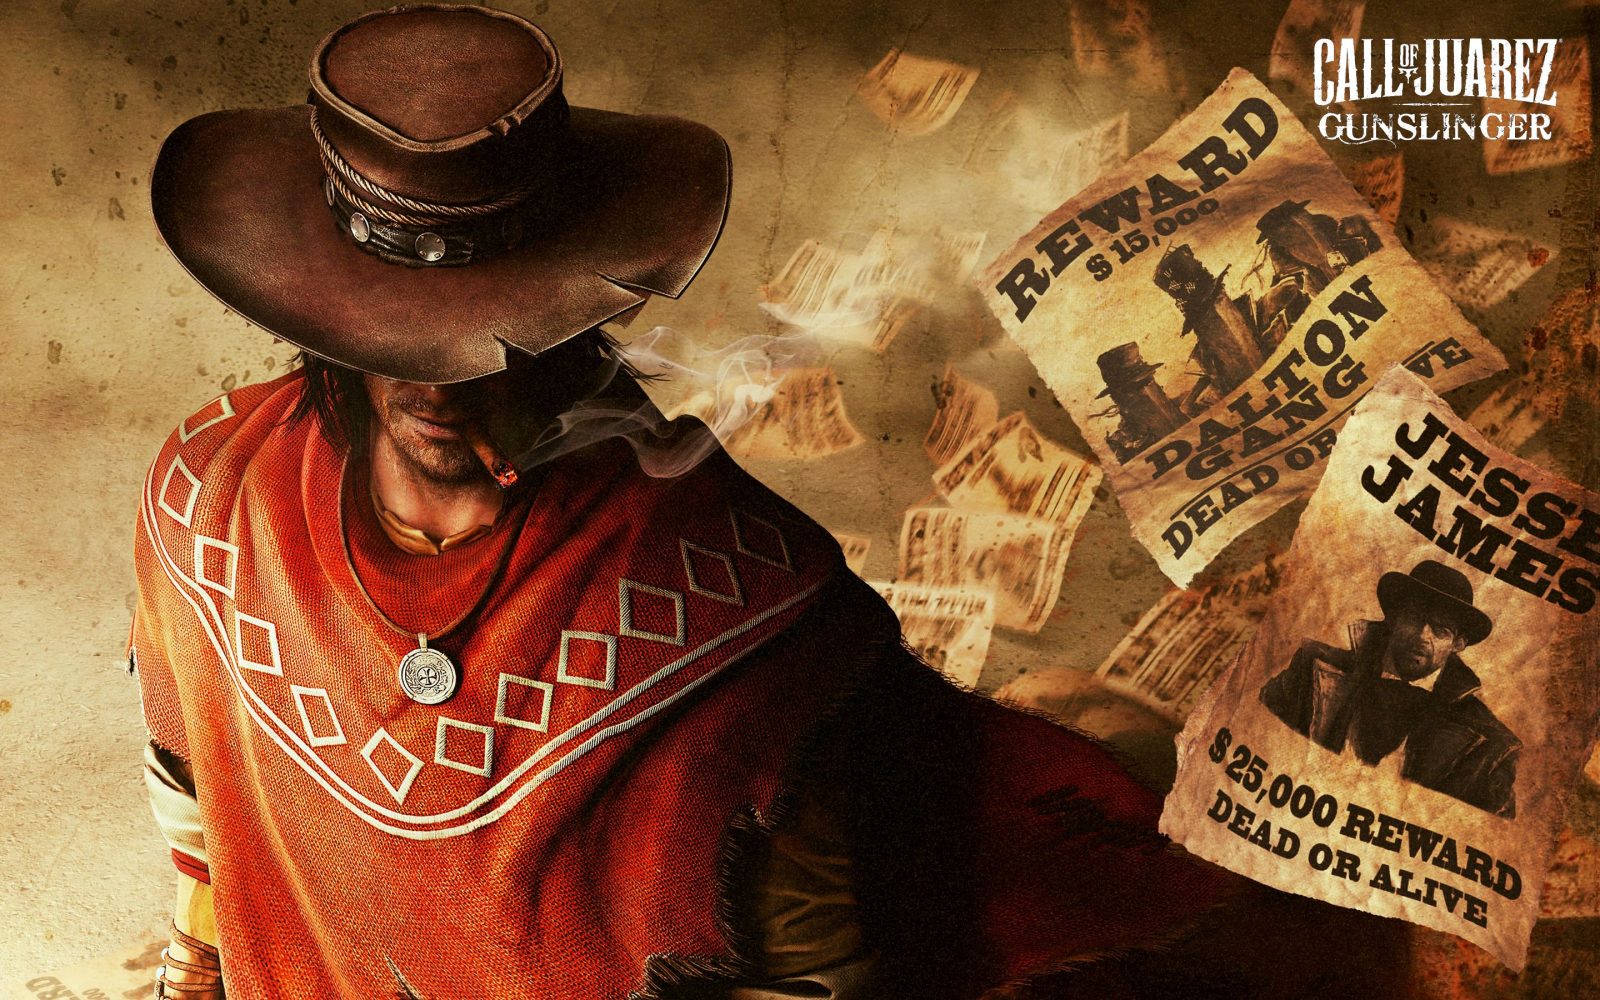 Registro de classificação da ESRB sugere que Call of Juarez: Gunslinger está vindo para o Nintendo Switch